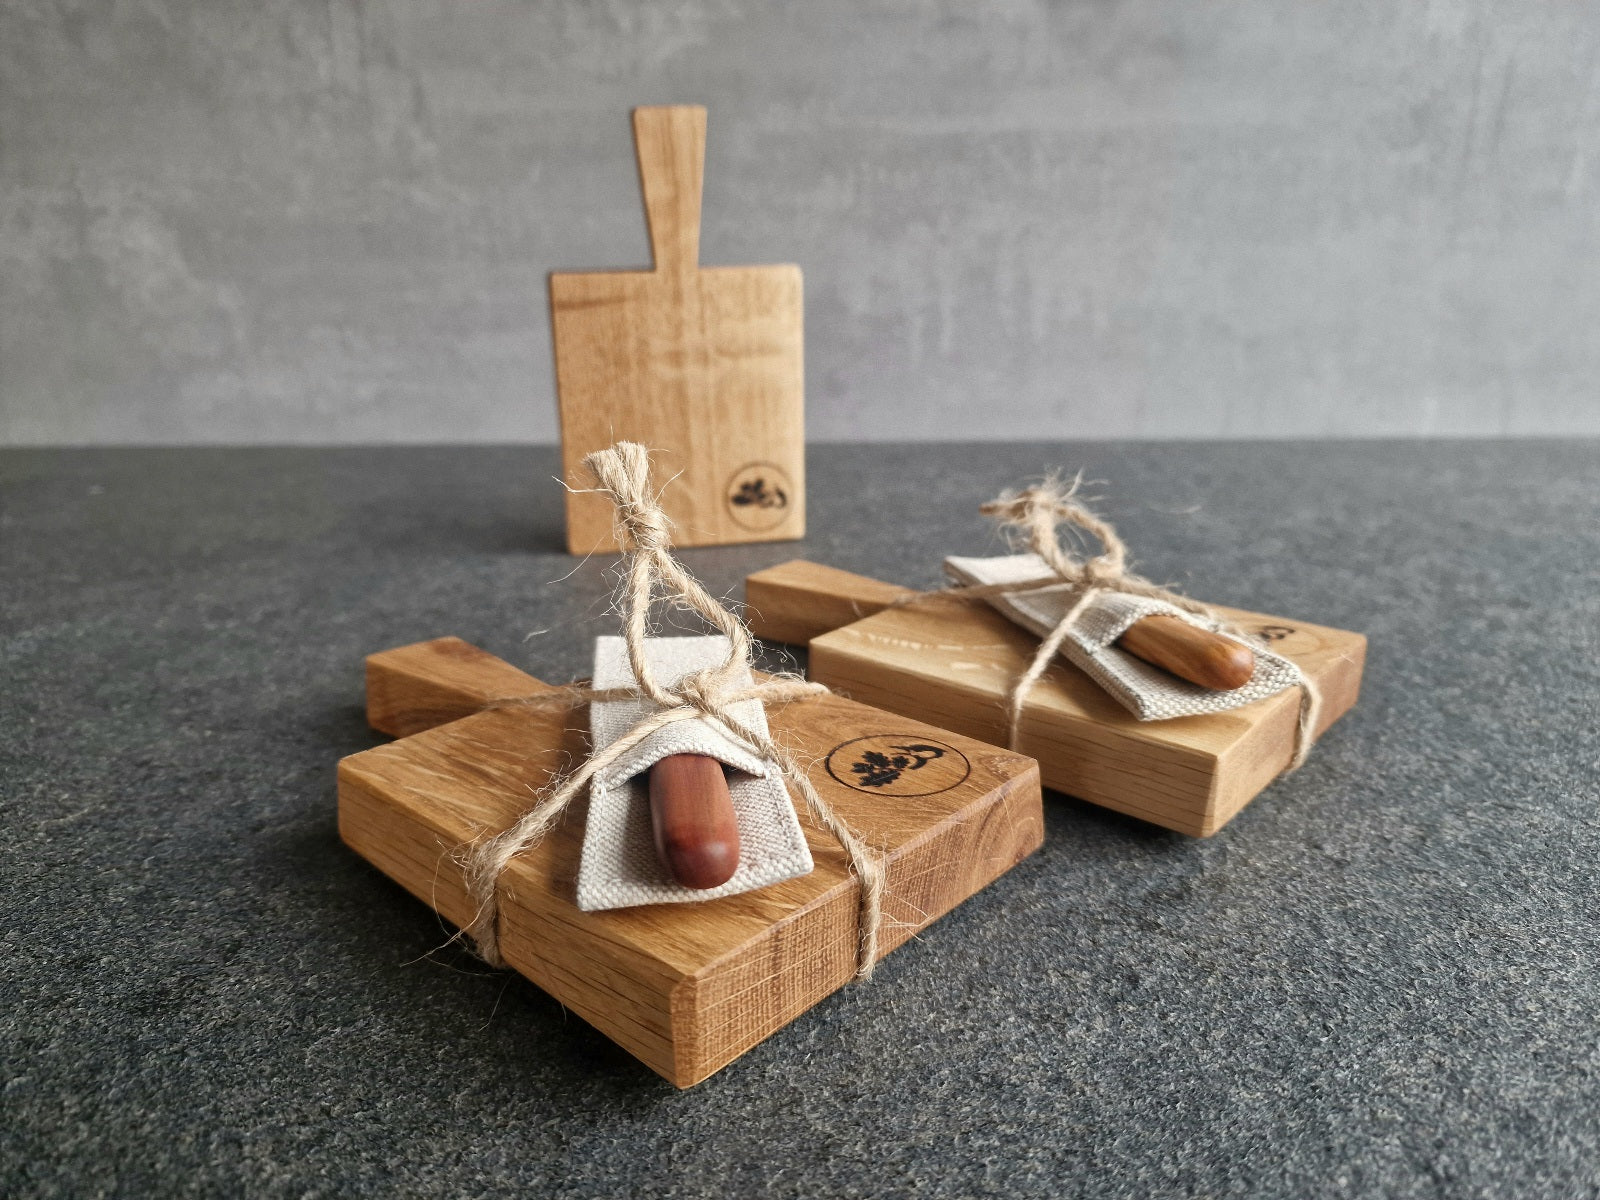 Ein Mini Eiche Holzbrett stehend im Hintergrund. Im Vordergrund zwei Holz Geschenke. Dasselbe Holzbrett jeweils mit einem Buttermesser im Etui verpackt, liegend auf einer Steinplatte.